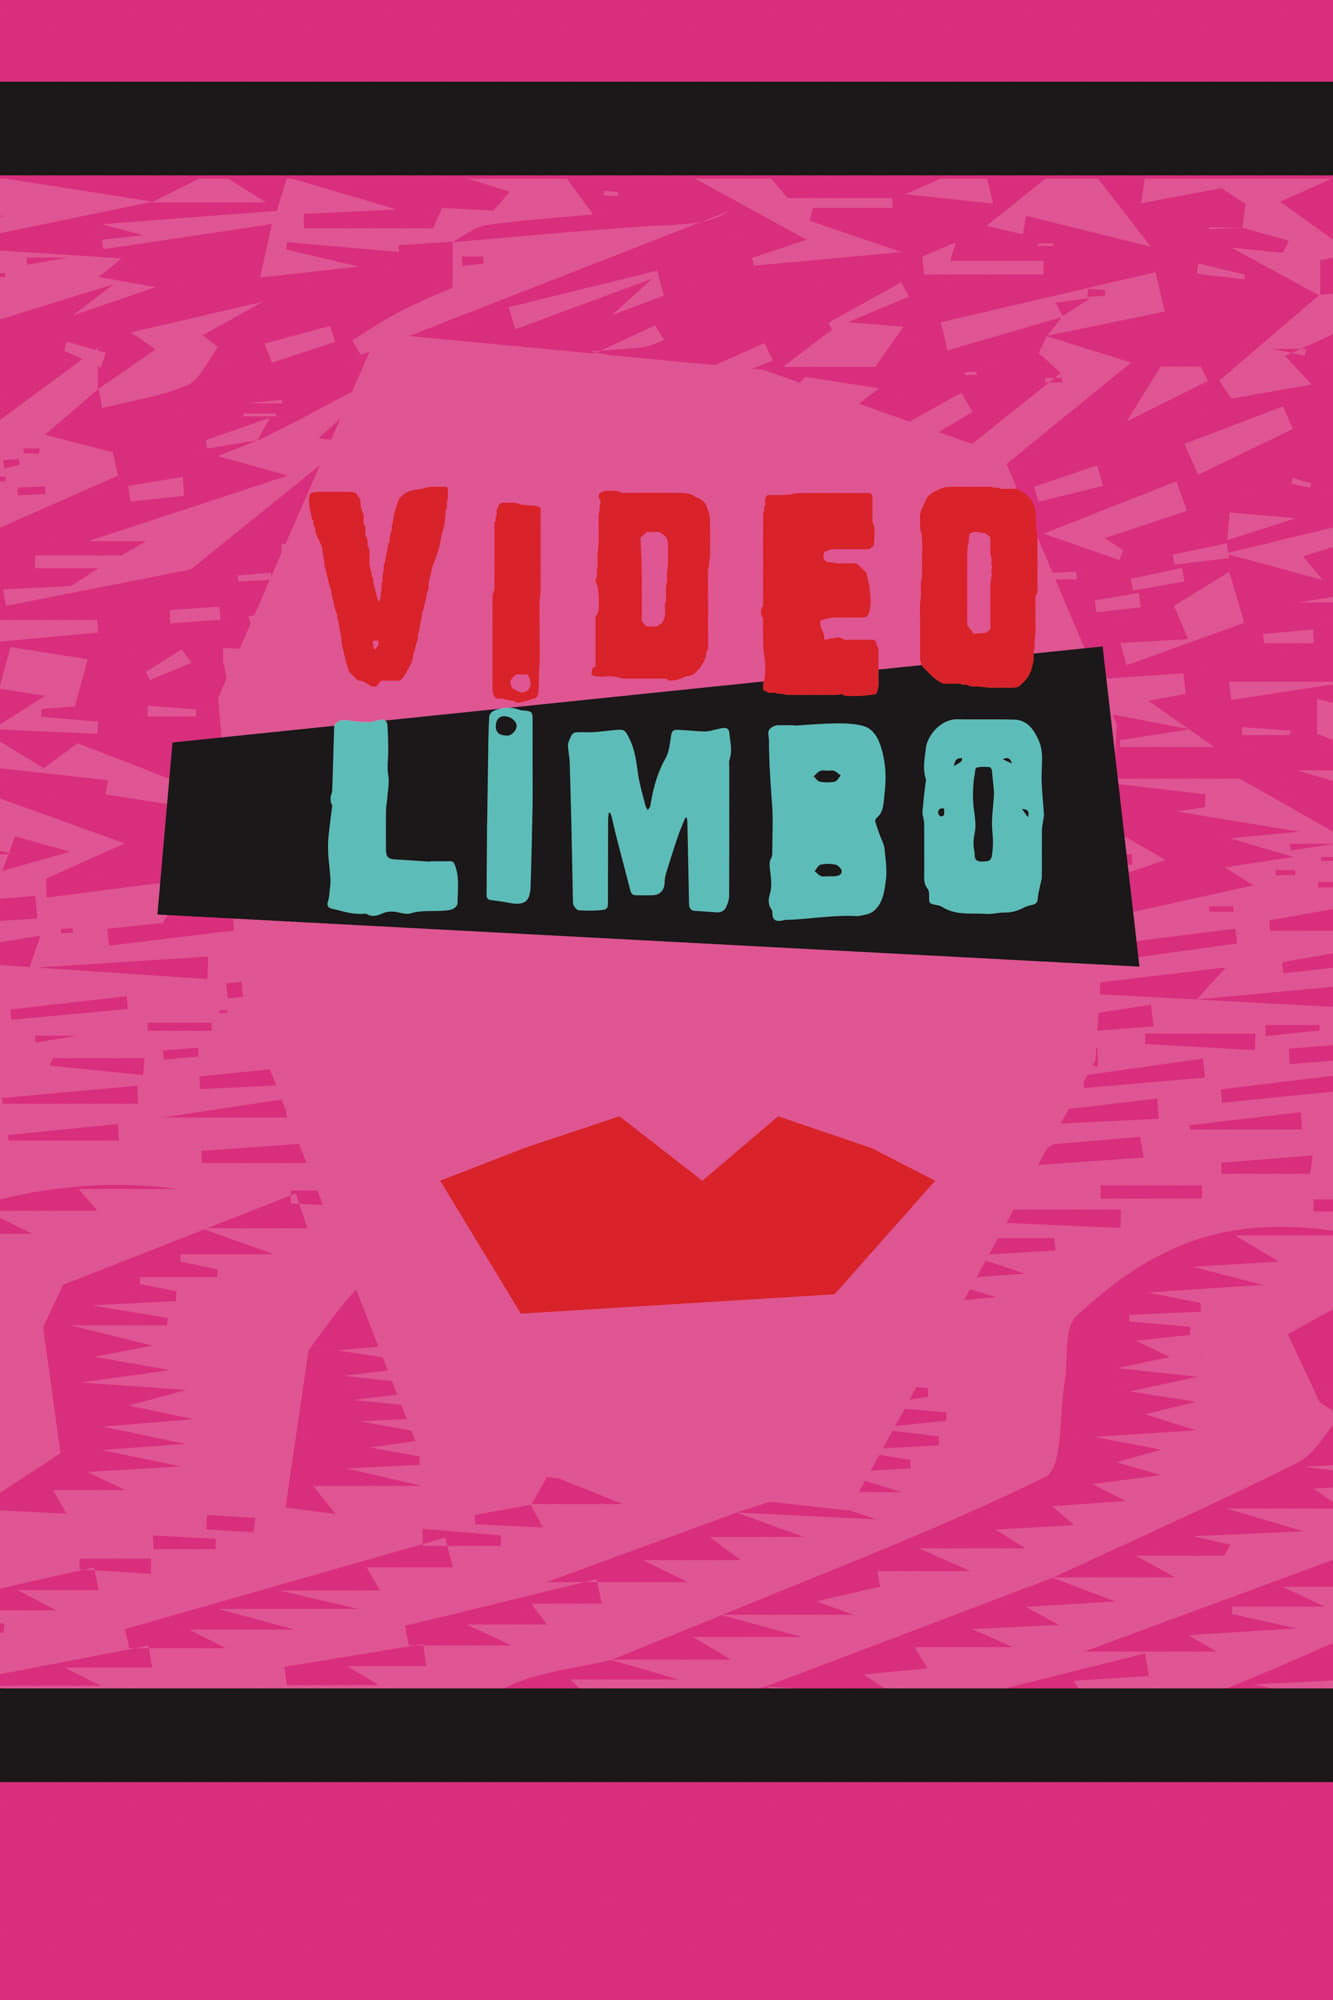 Video Limbo